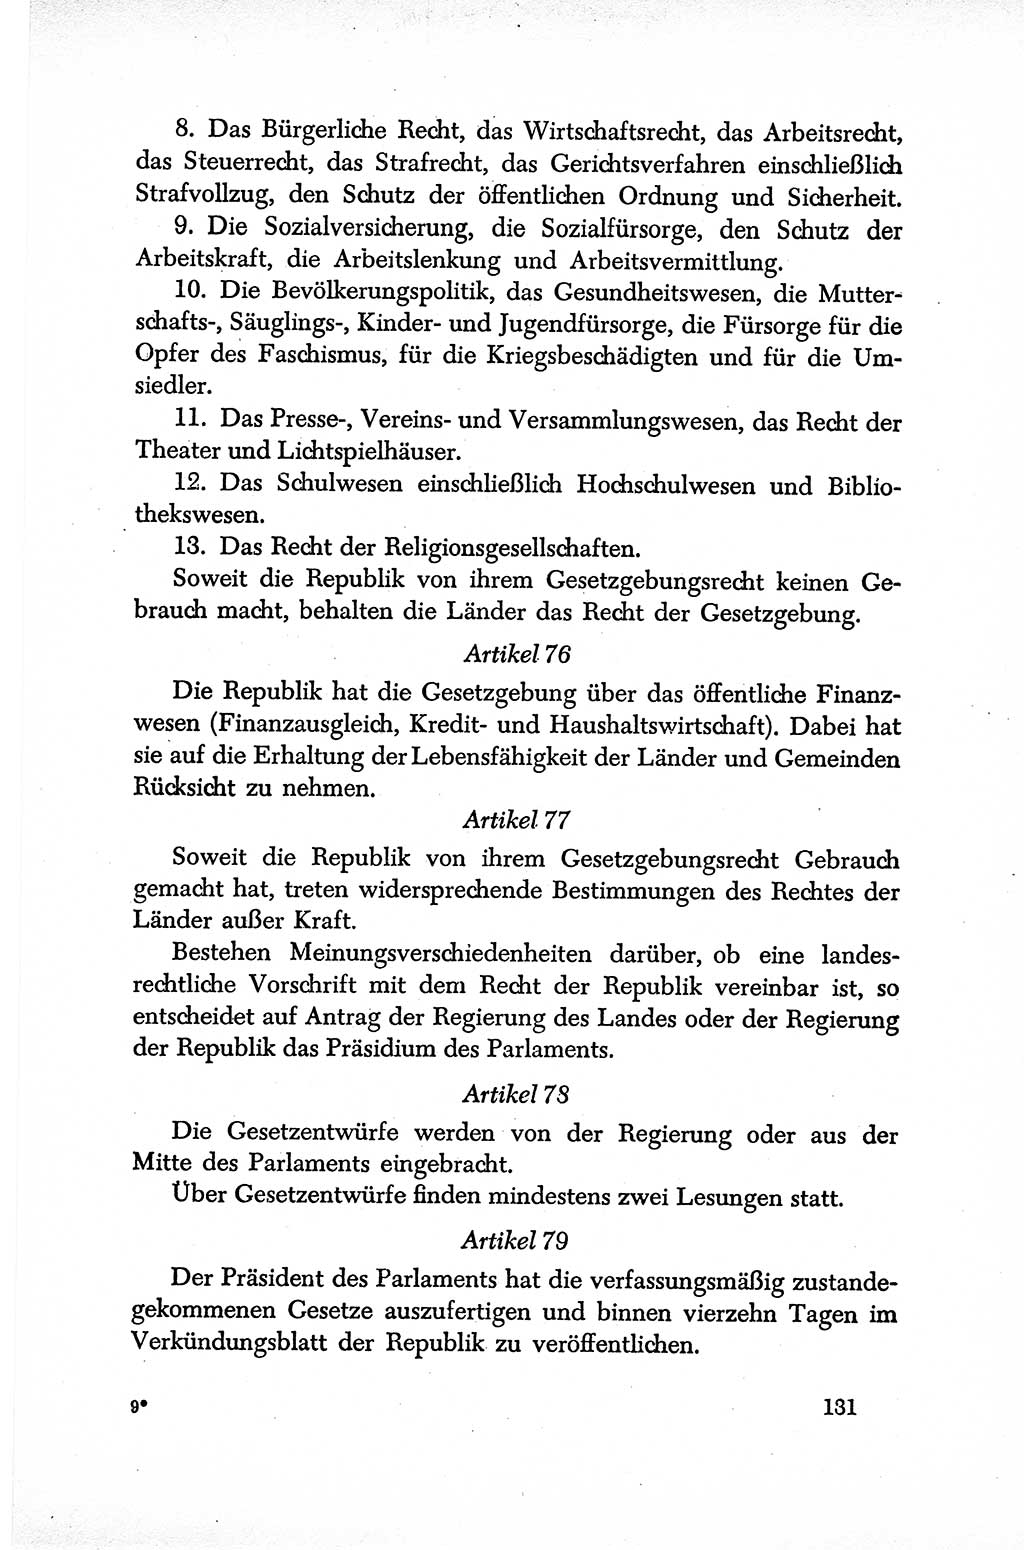 Dokumente der Sozialistischen Einheitspartei Deutschlands (SED) [Sowjetische Besatzungszone (SBZ) Deutschlands] 1946-1948, Seite 131 (Dok. SED SBZ Dtl. 1946-1948, S. 131)